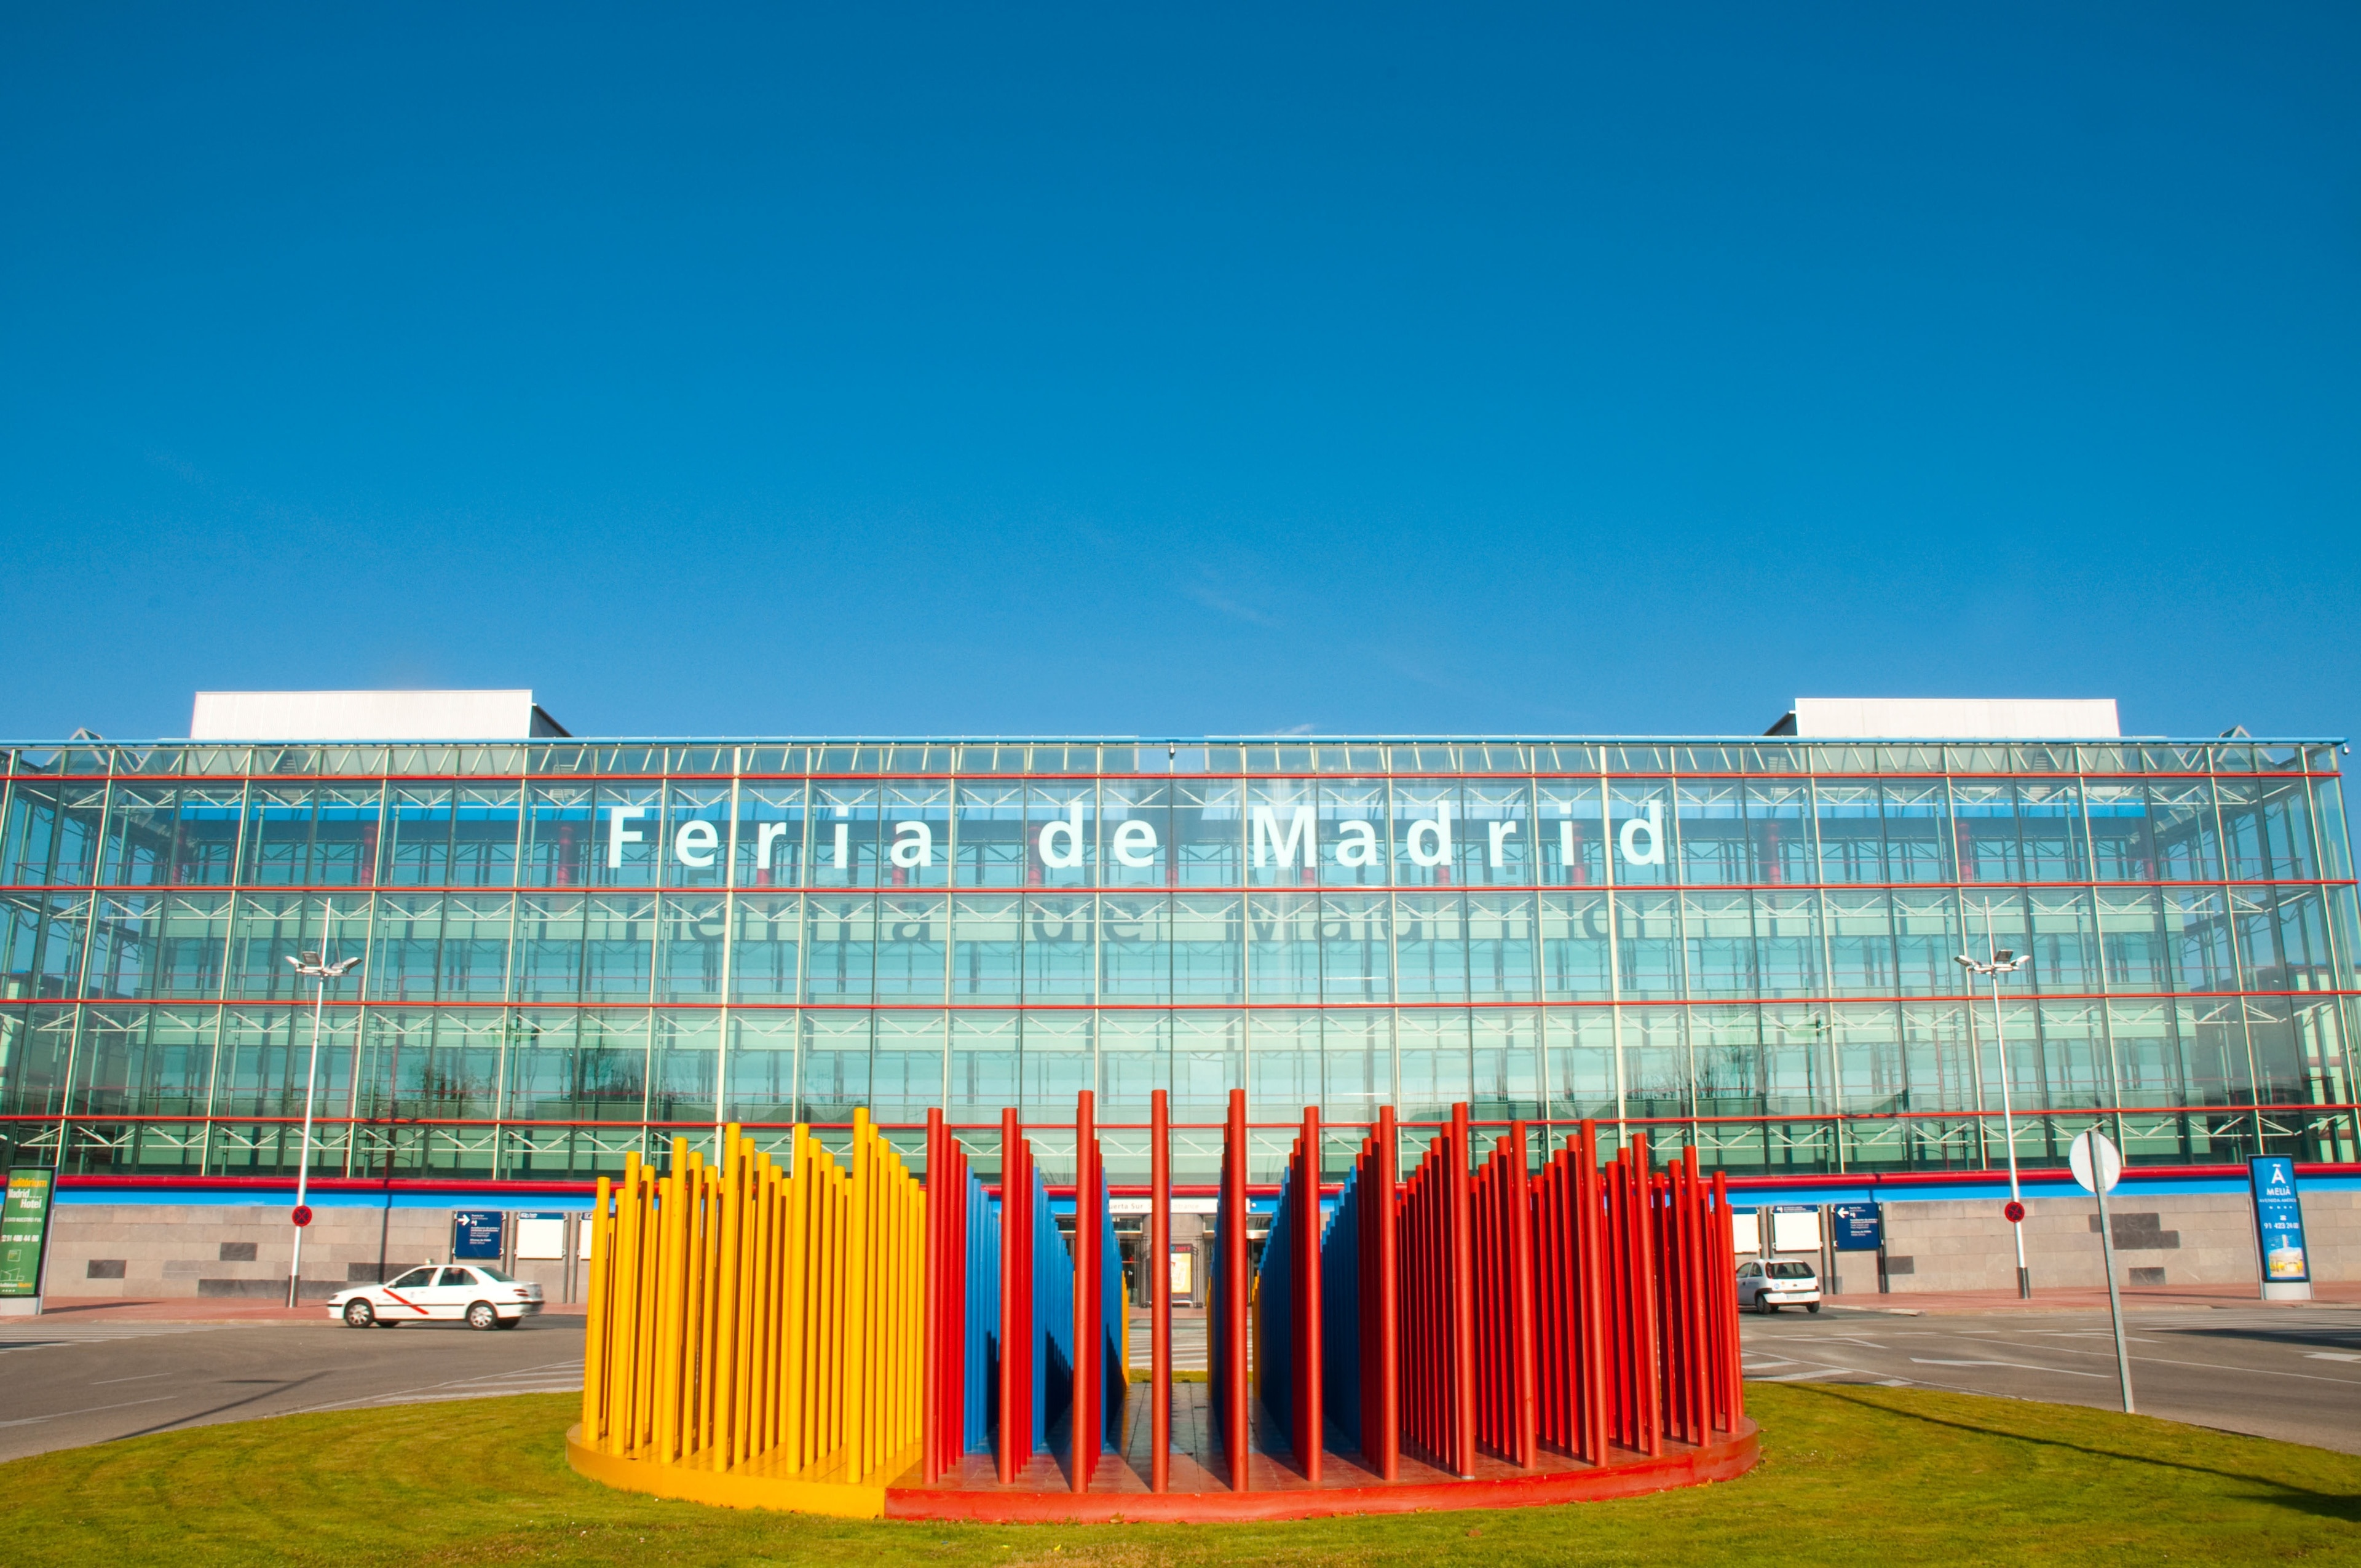 Auf dem Messegelände der IFEMA (Institución Ferial de Madrid) finden wichtige Messen, Ausstellungen und Konferenzen statt. Madrids Messeplatz Nummer eins bietet jede Menge Komfort und eine moderne Ausstattung.